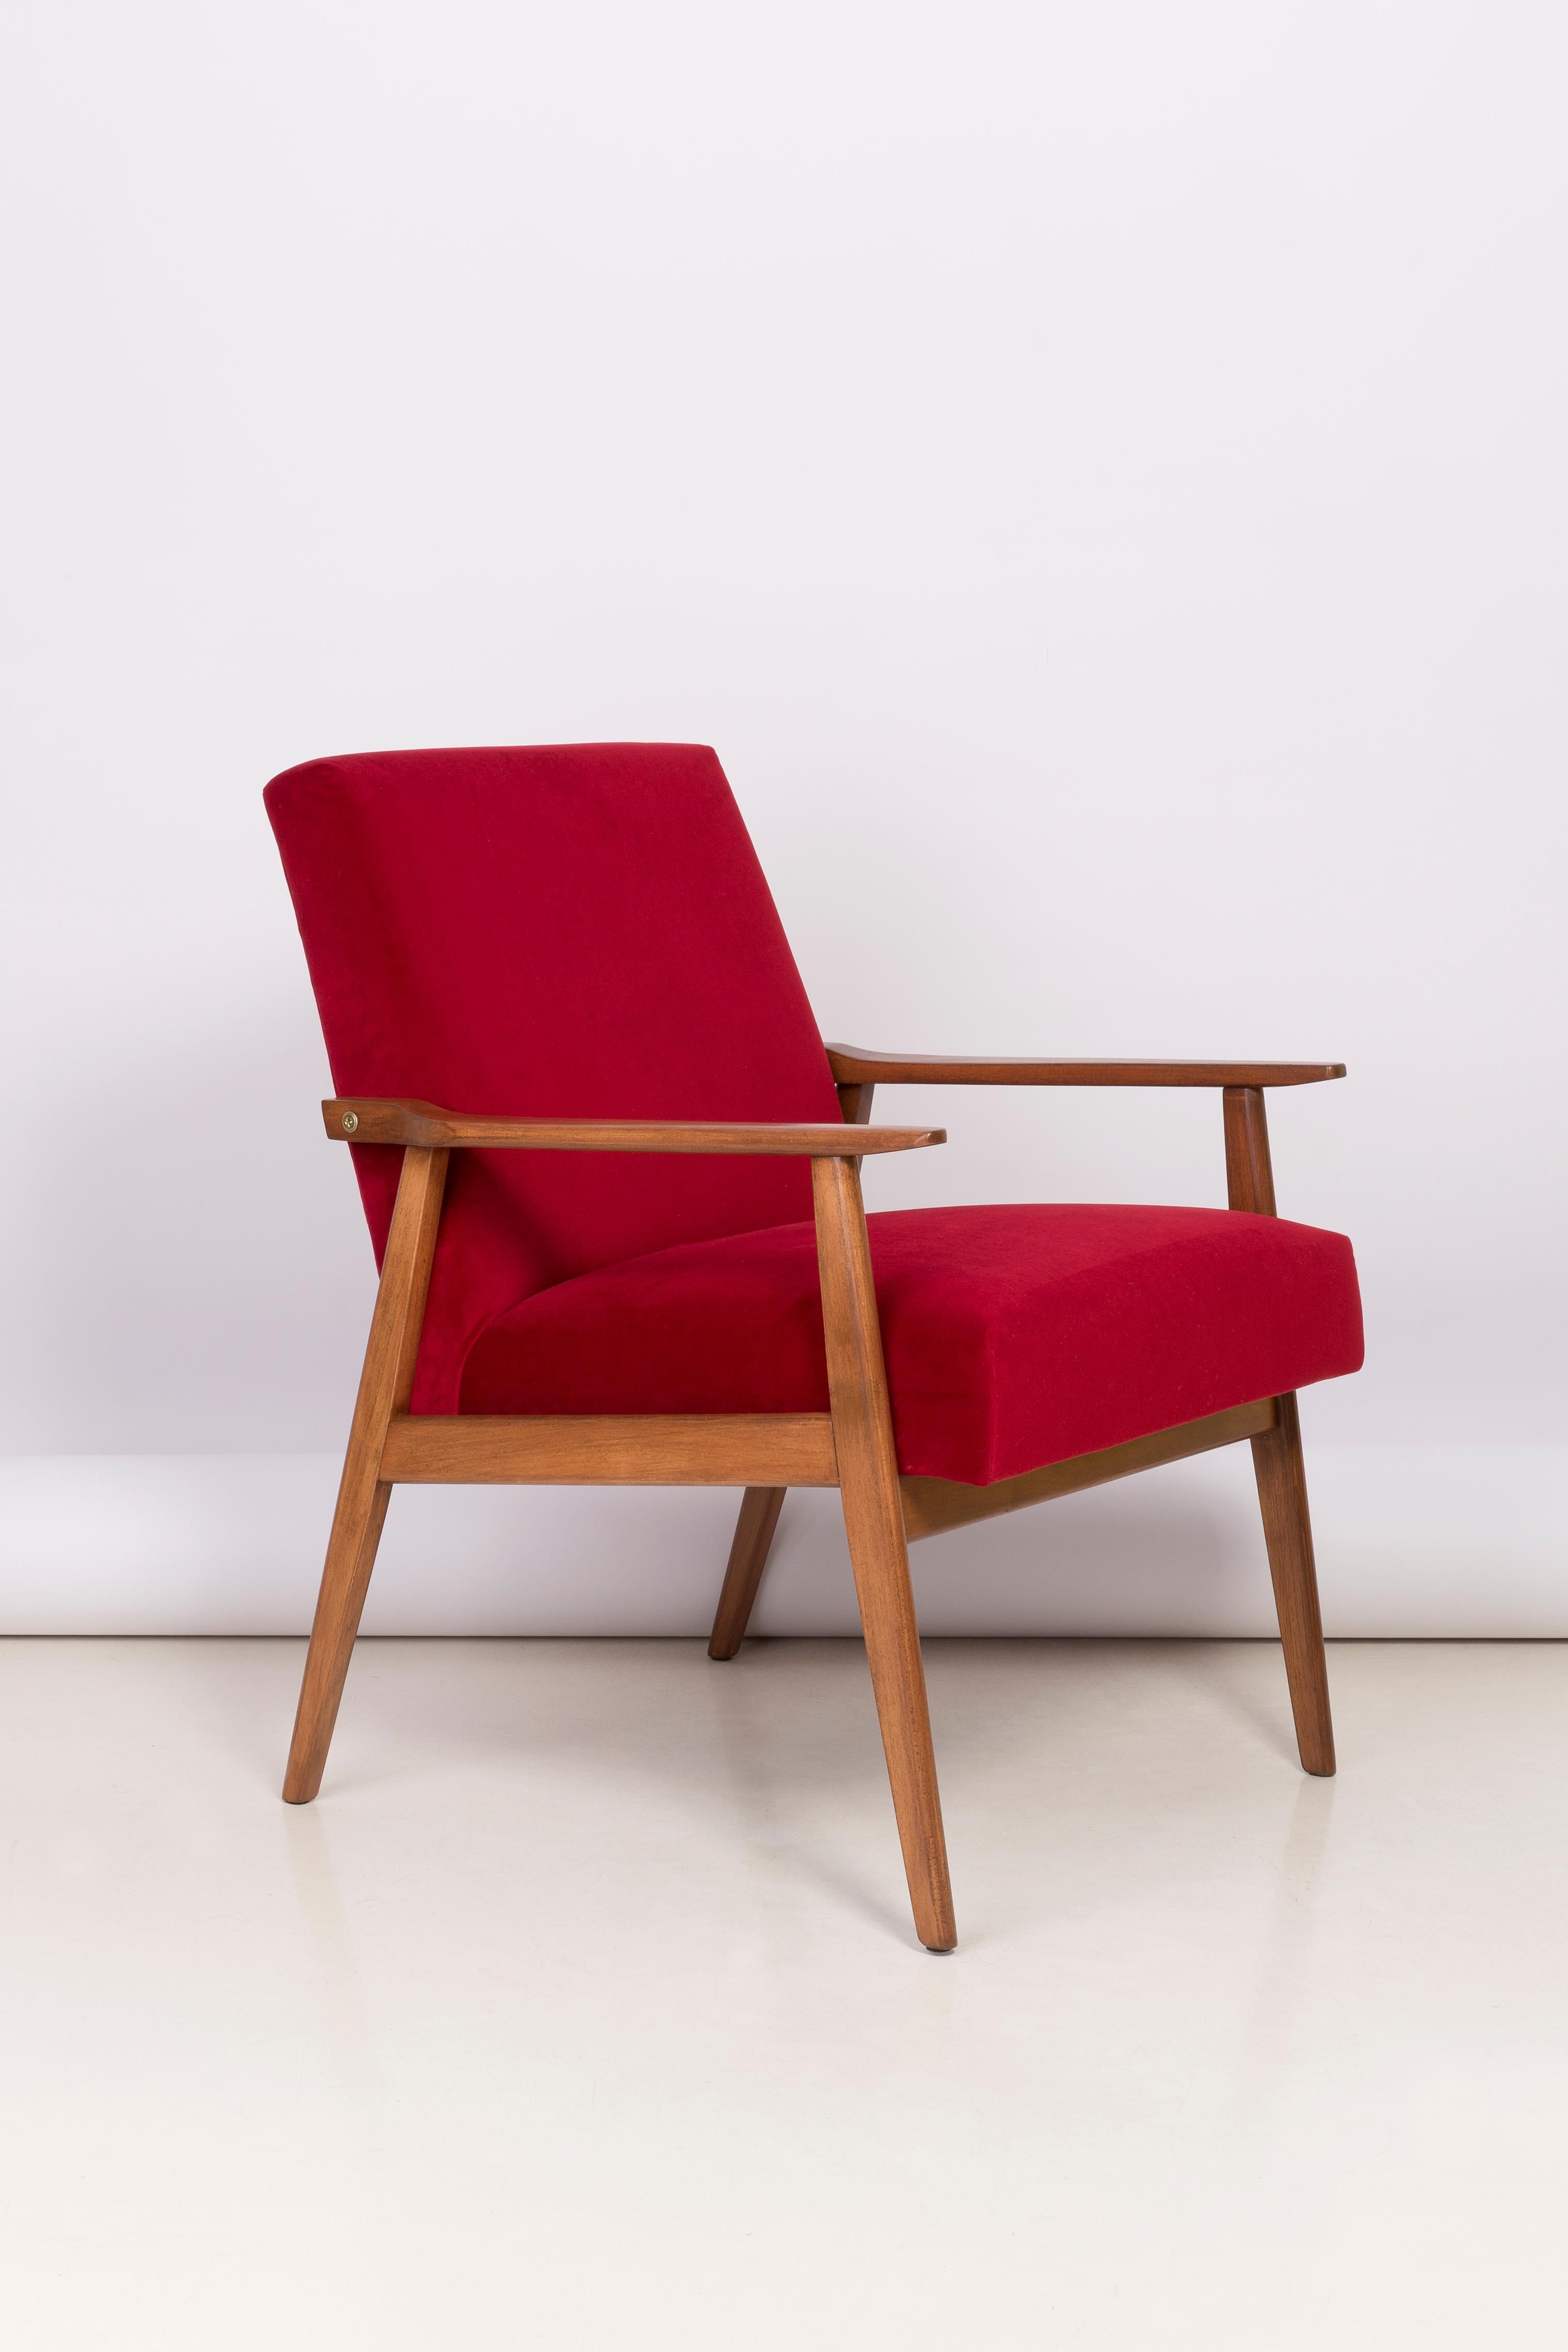 Un beau fauteuil restauré, conçu par Henryk Lis. Meubles après une rénovation complète de la menuiserie et de la tapisserie. Le tissu, qui est recouvert d'un dossier et d'une assise, est un revêtement en velours rouge de haute qualité (couleur